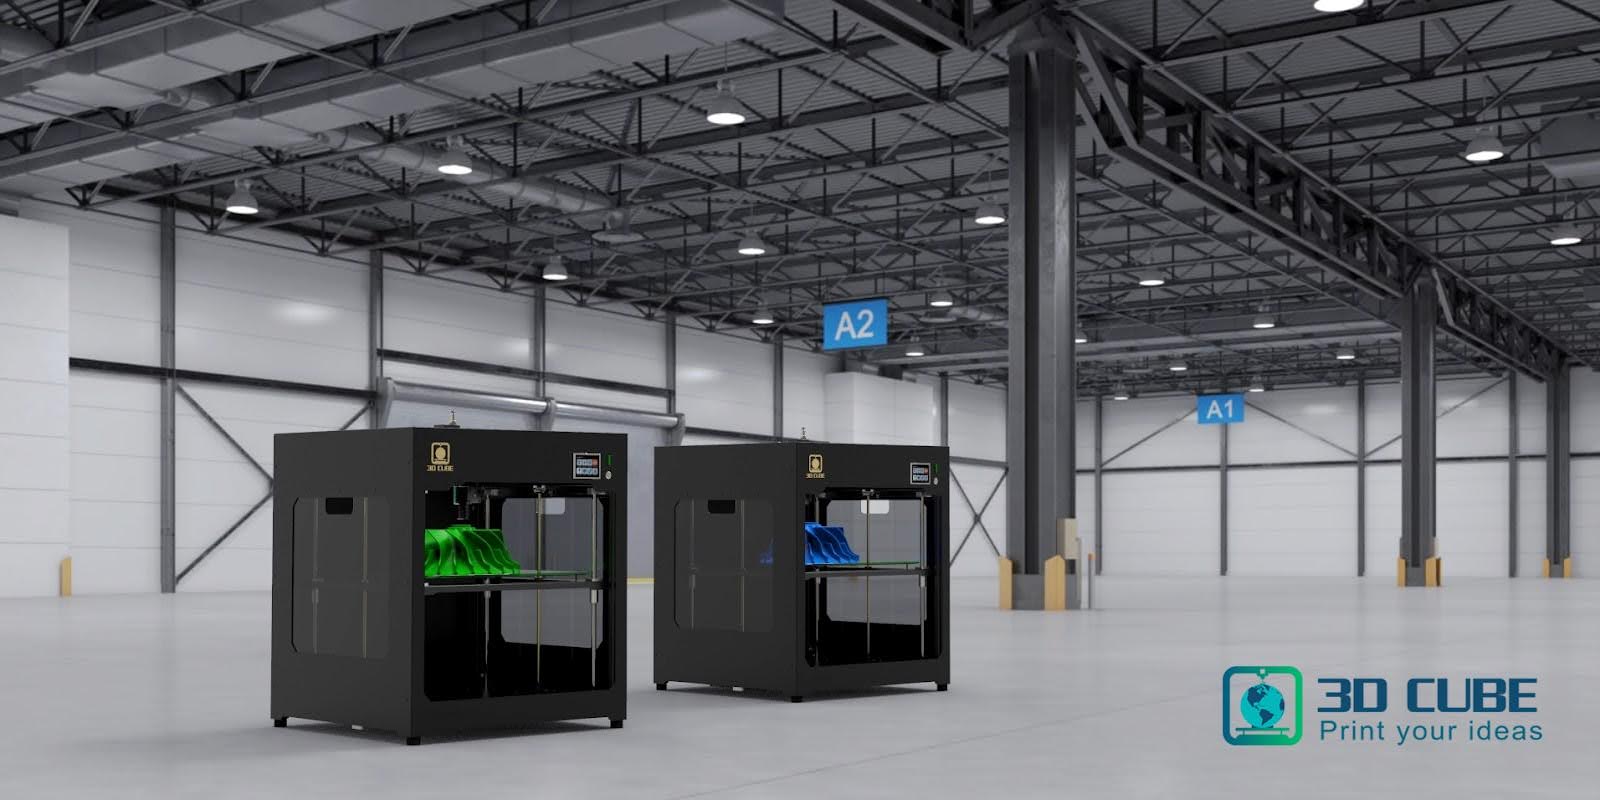 3DCUBE cung cấp sản phẩm máy in 3D CUBIX 1000 đảm bảo chất lượng cao 